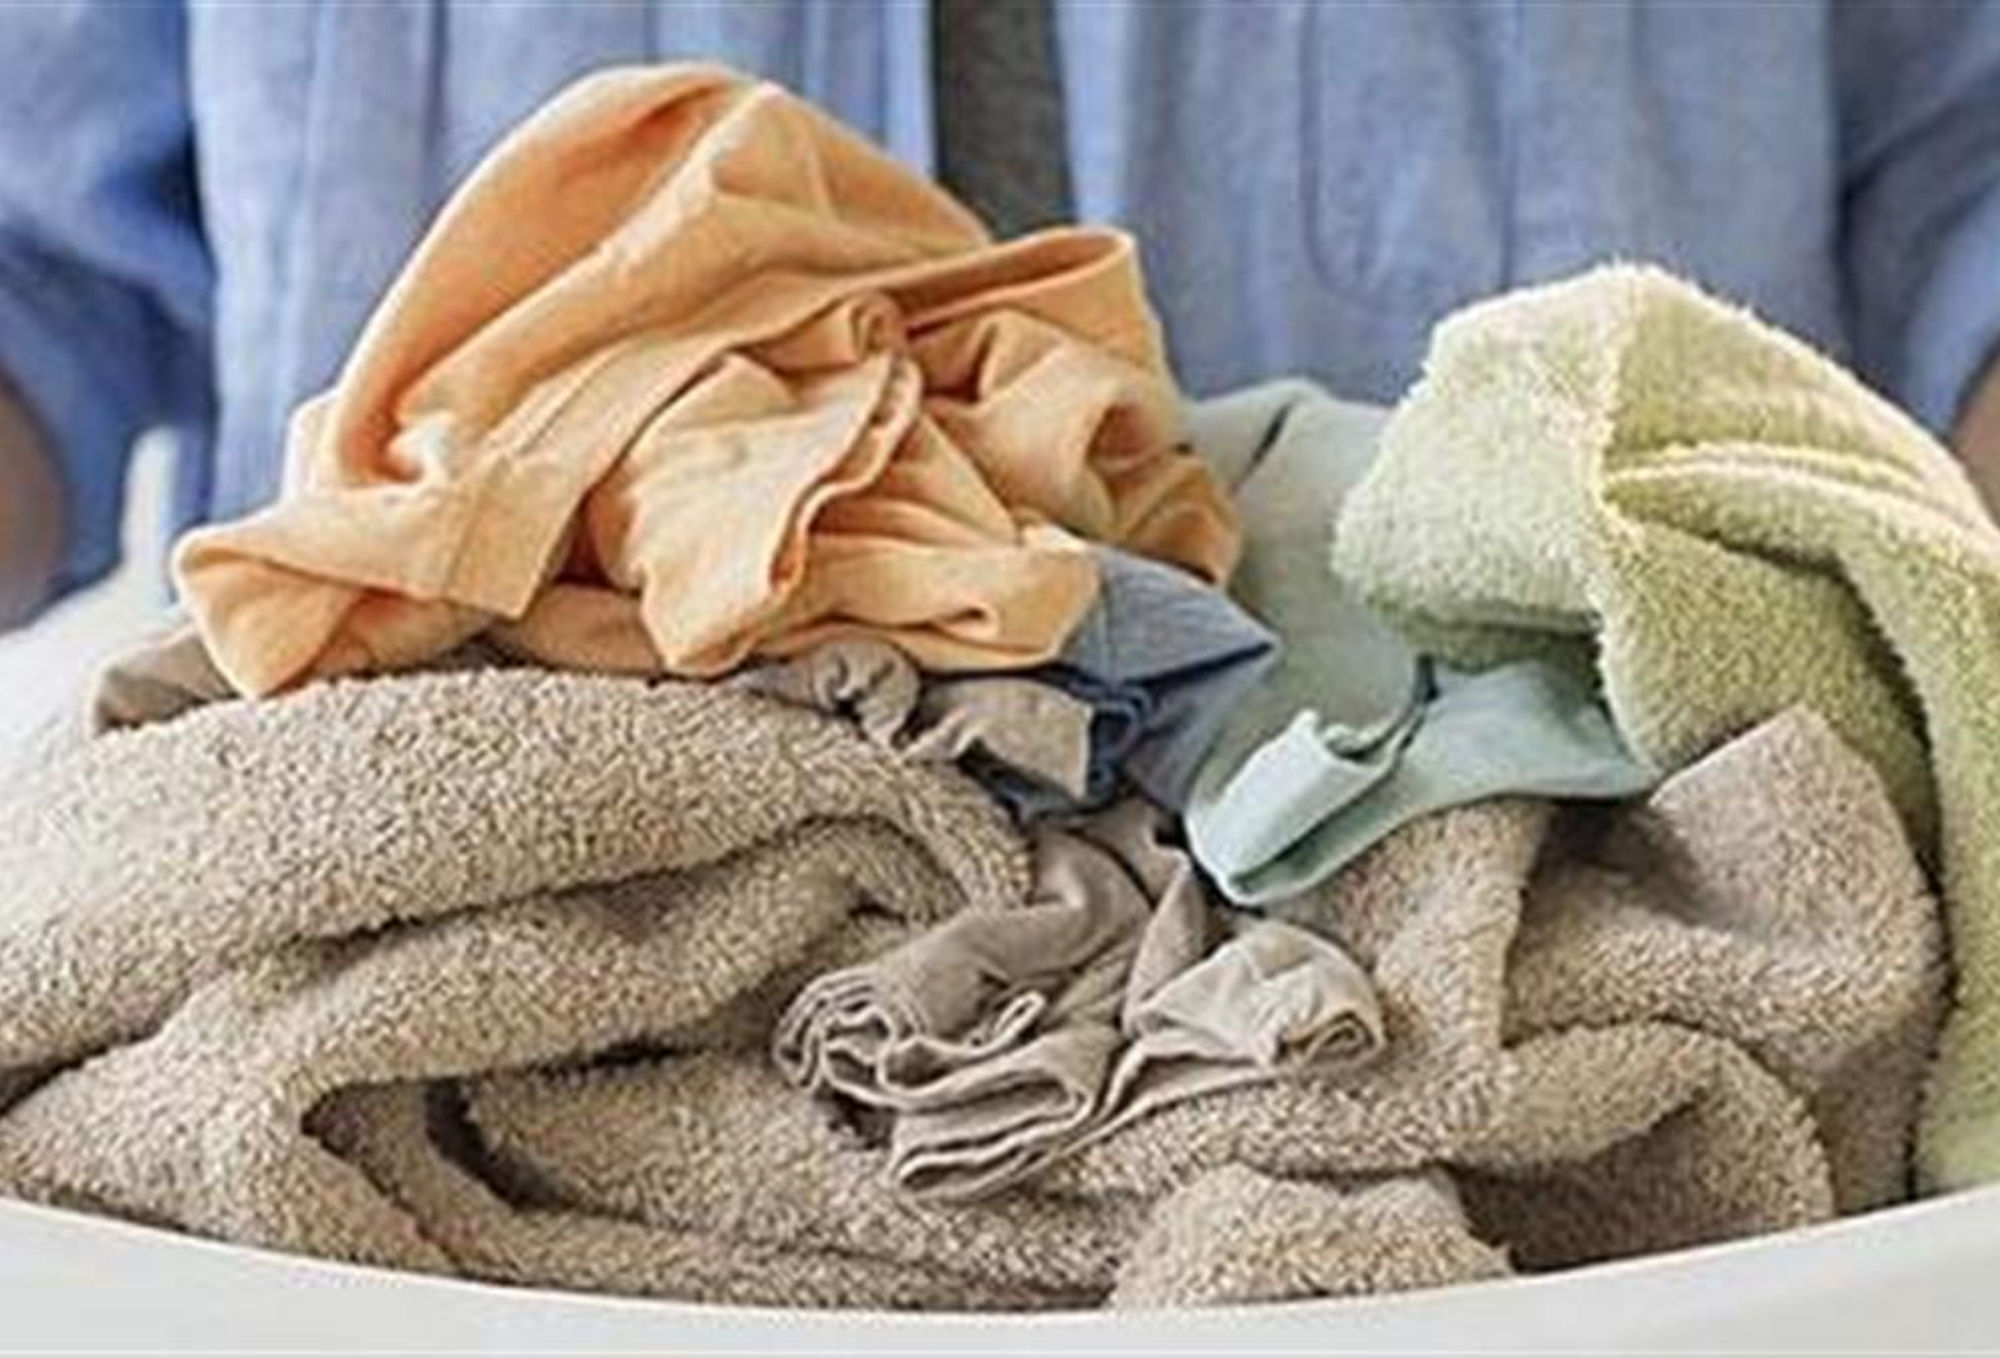 Λίπη λαδιές και δύσκολοι λεκέδες στις πετσέτες τη κουζίνας: Από λιγδιασμένες κάντε τες ξανά σαν καινούριες